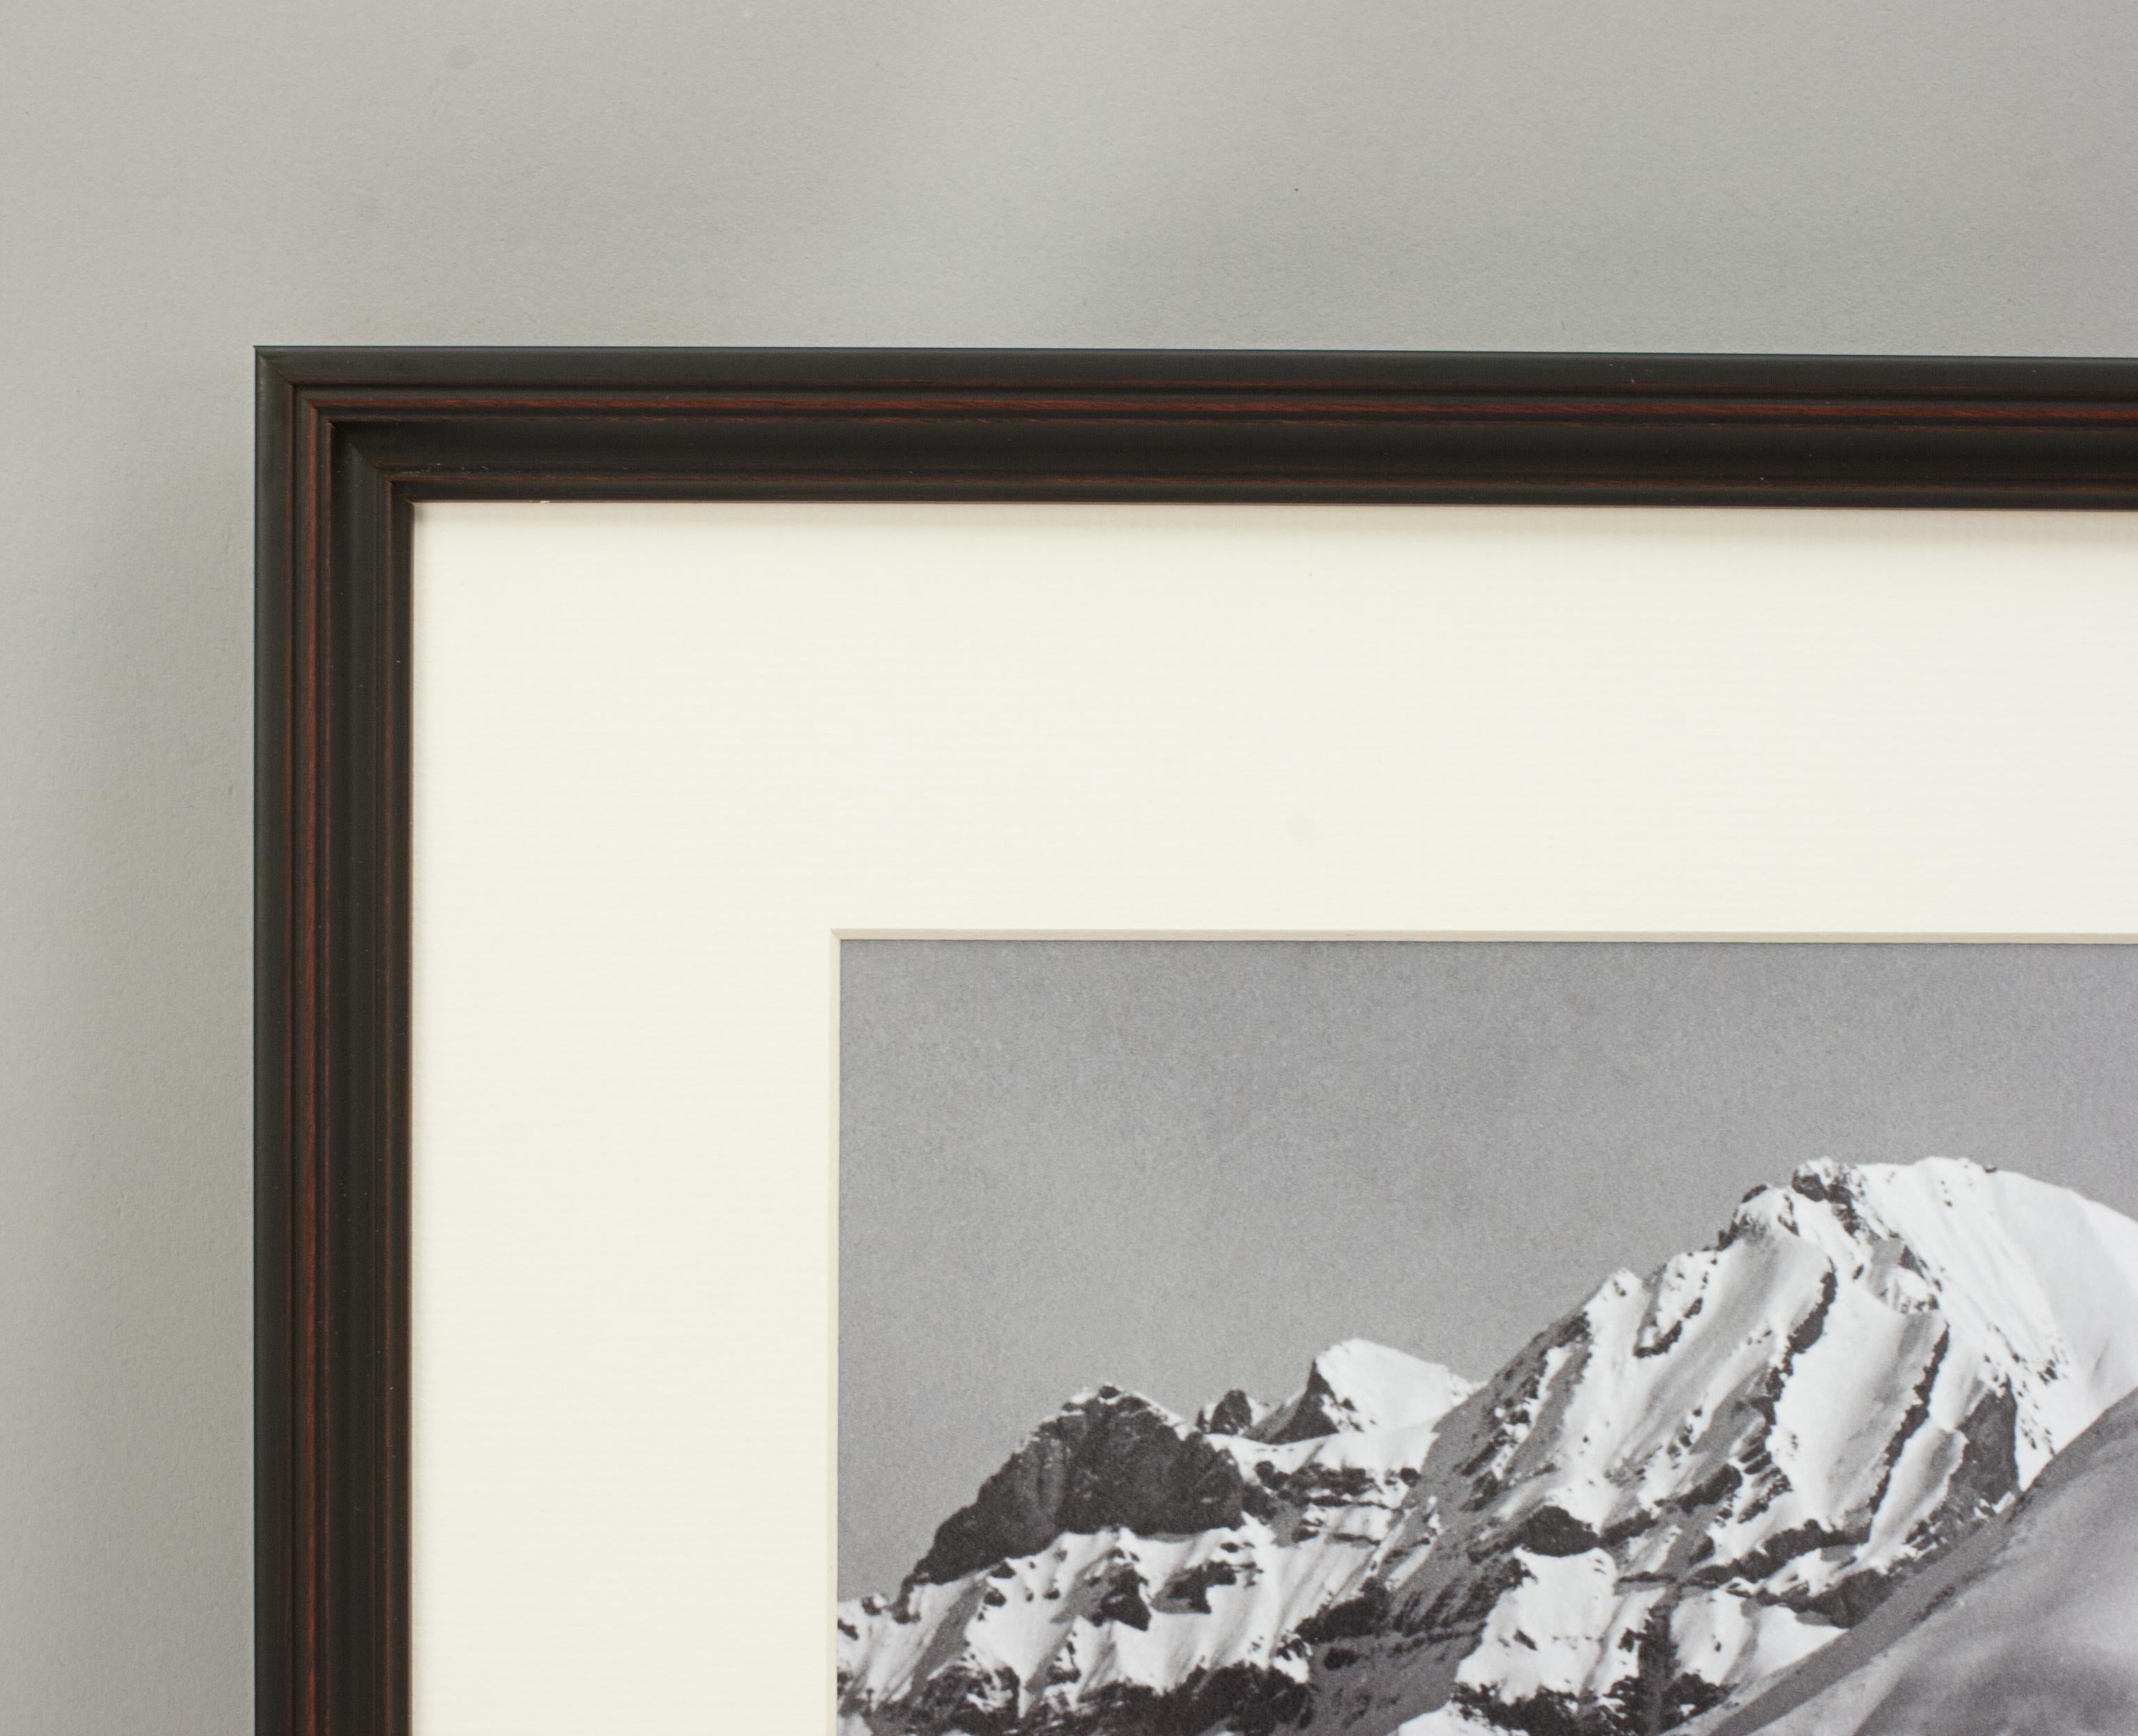 Alpinskifotografie, „Panoramikansicht“, aufgenommen nach einer Originalfotografie aus den 1930er Jahren (Papier) im Angebot